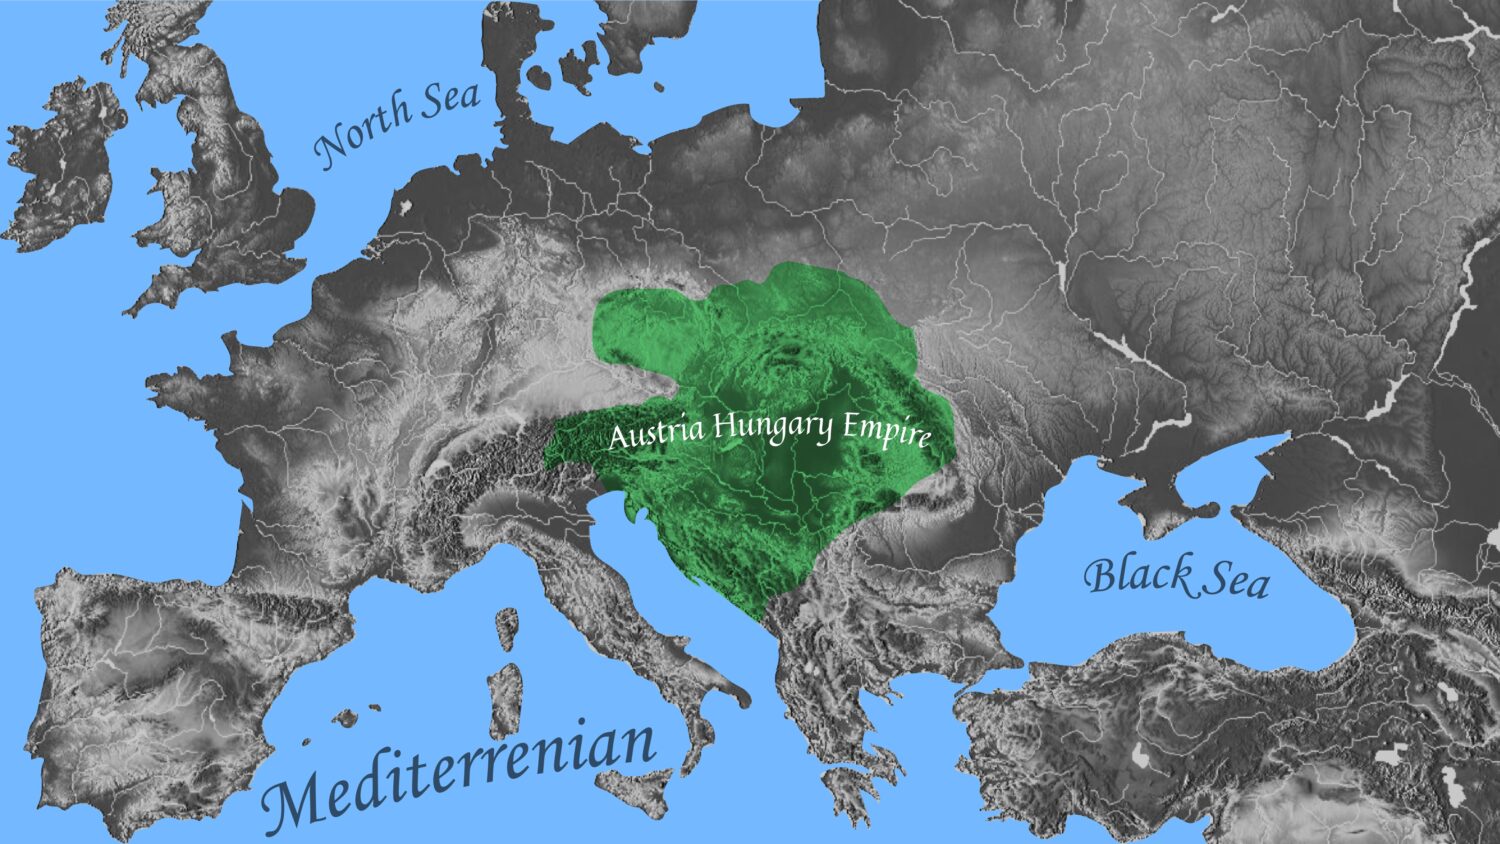 Austria-Hungary Empire